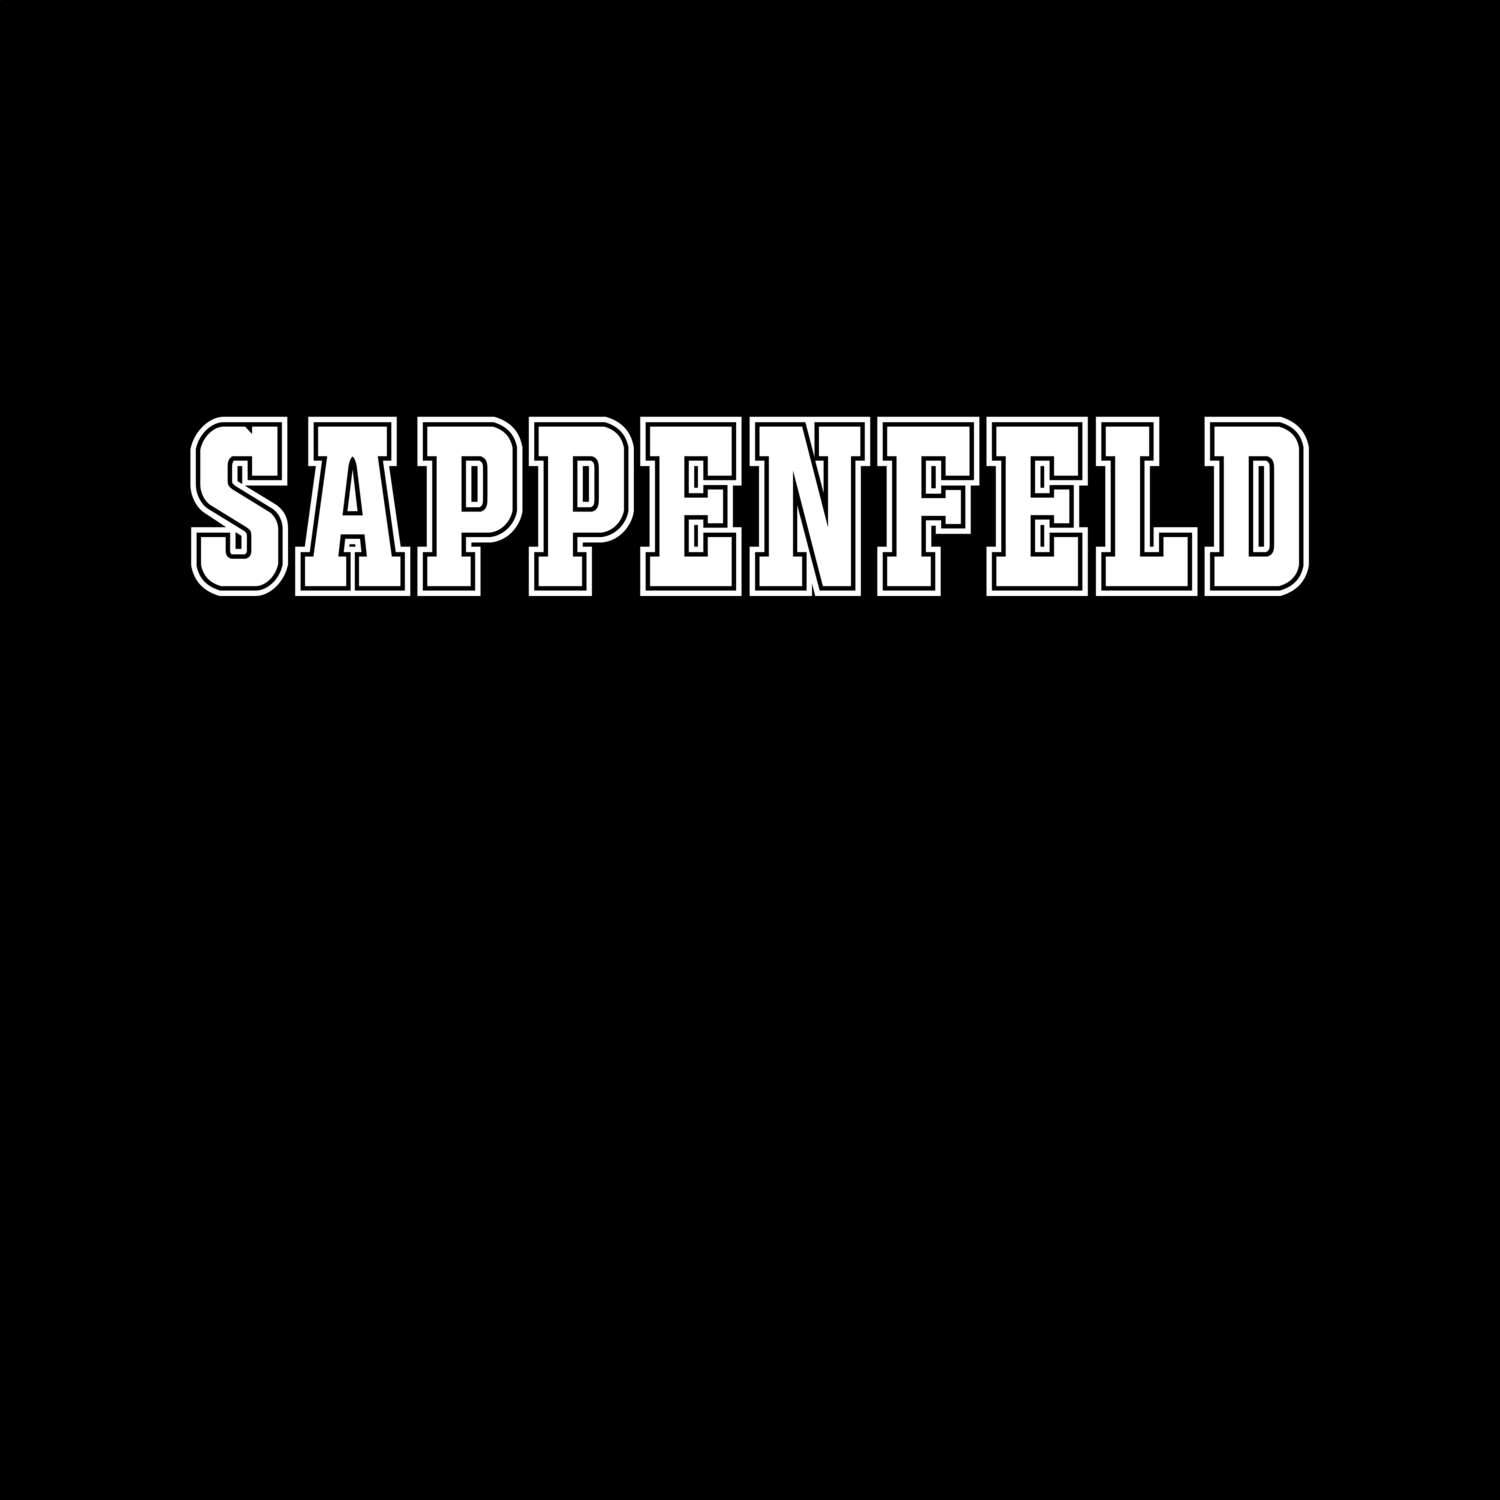 Sappenfeld T-Shirt »Classic«